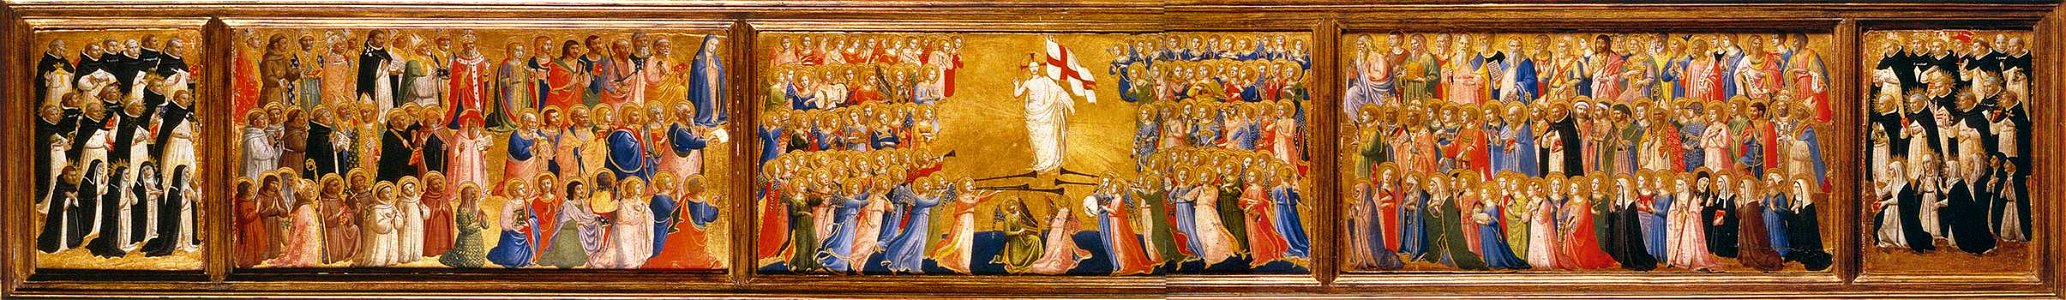 Fra Angelico - Predella of the San Domenico Altarpiece - WGA00447